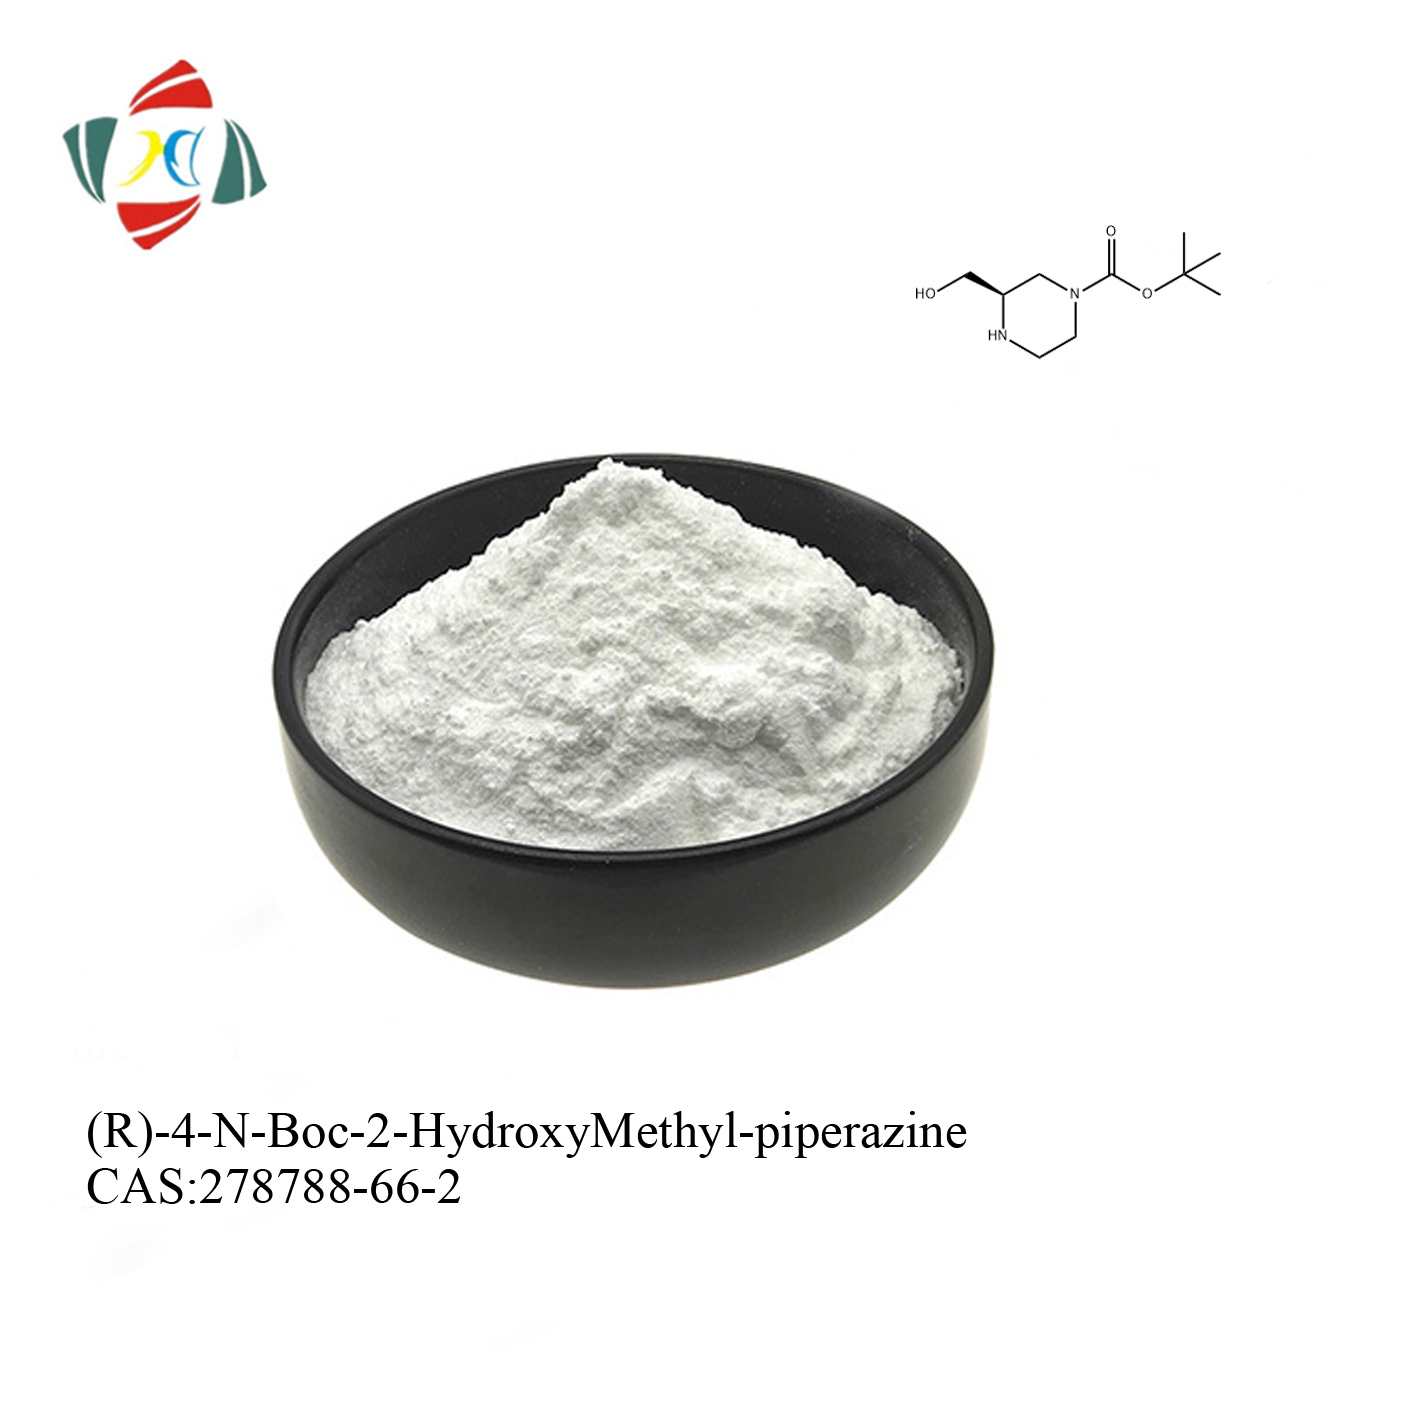 (R)-4-N-Boc-2-HydroxyMéthyl-pipérazine CAS 278788-66-2